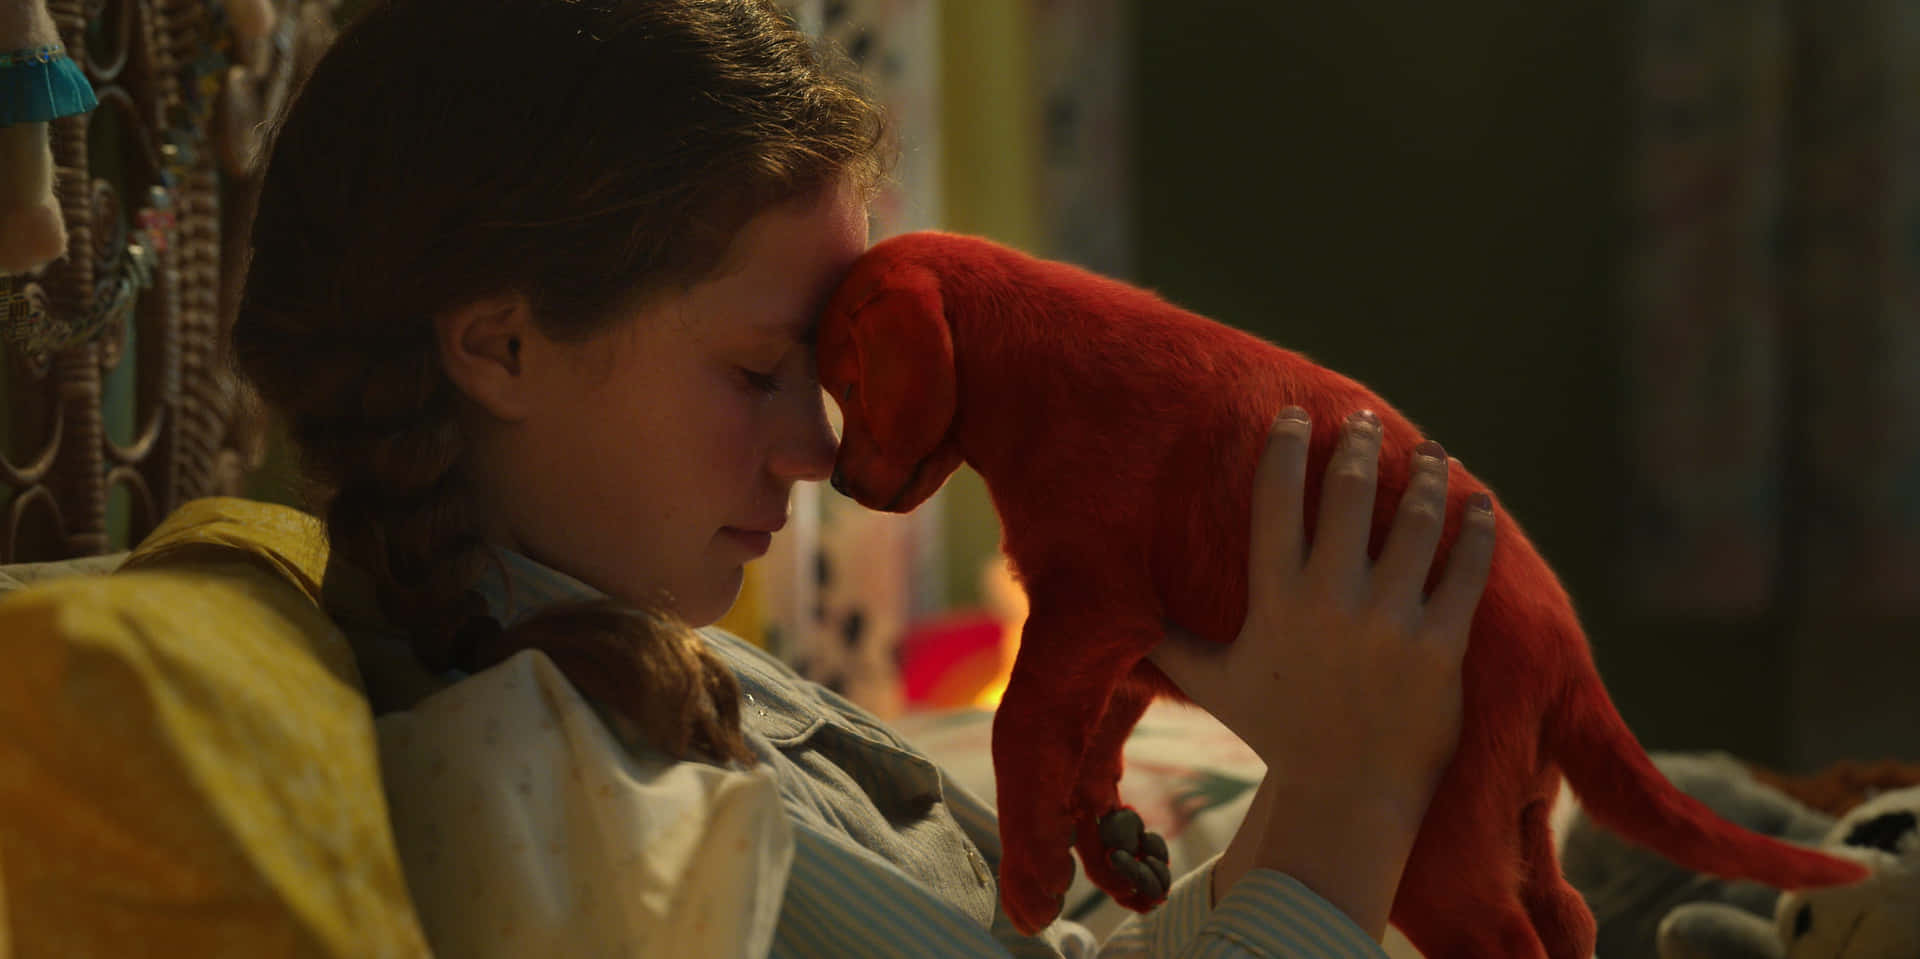 Unachica Está Abrazando A Un Perro Rojo En La Cama.